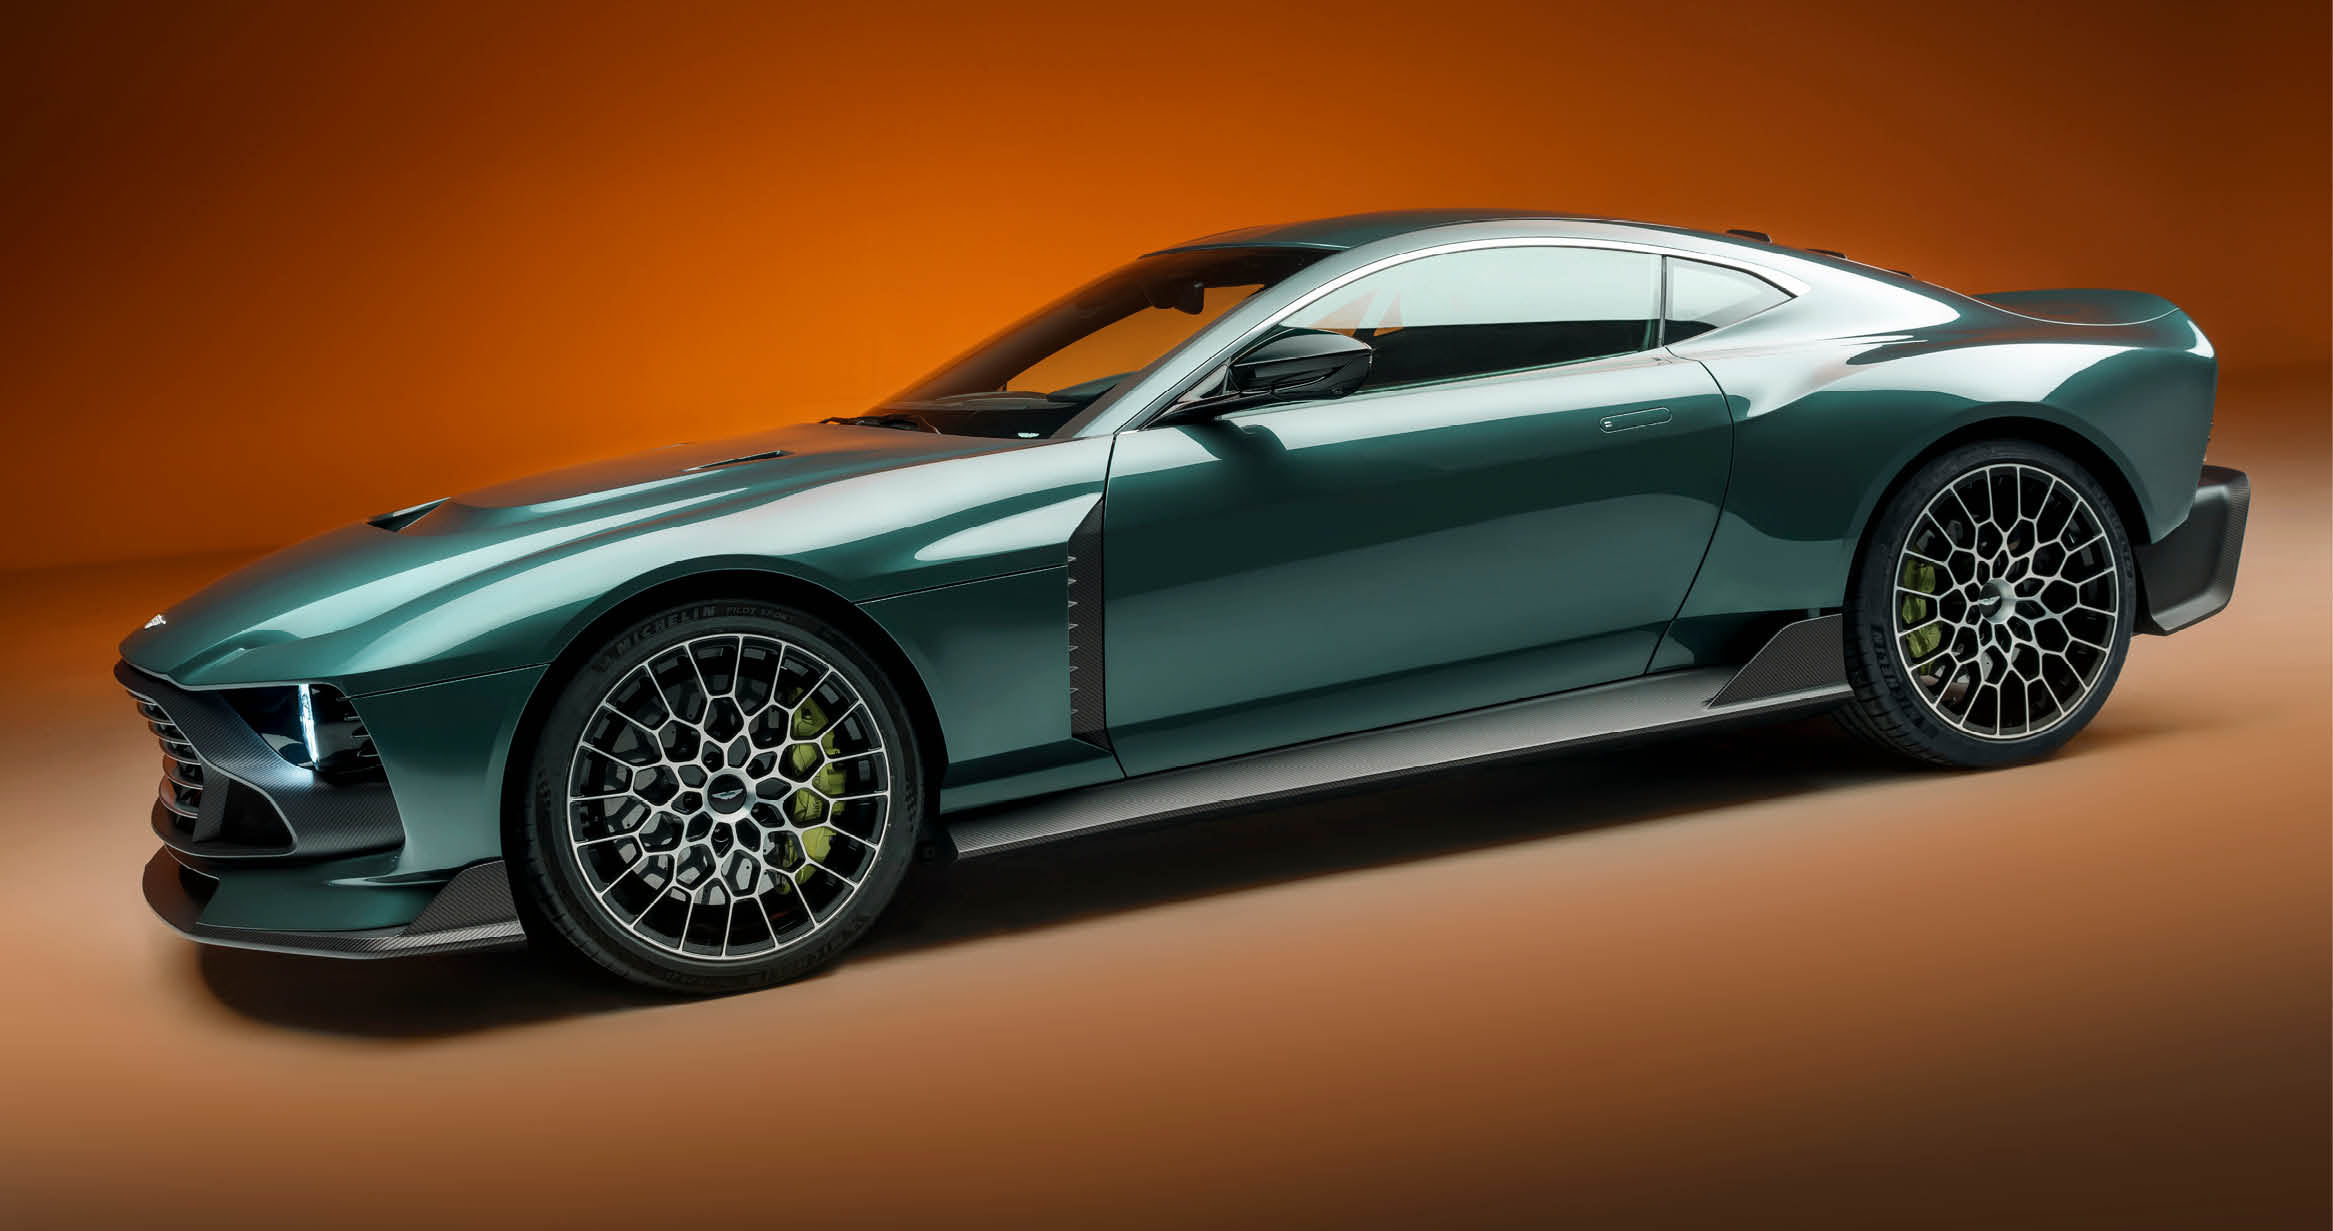 Side profile of the Aston Martin Valour